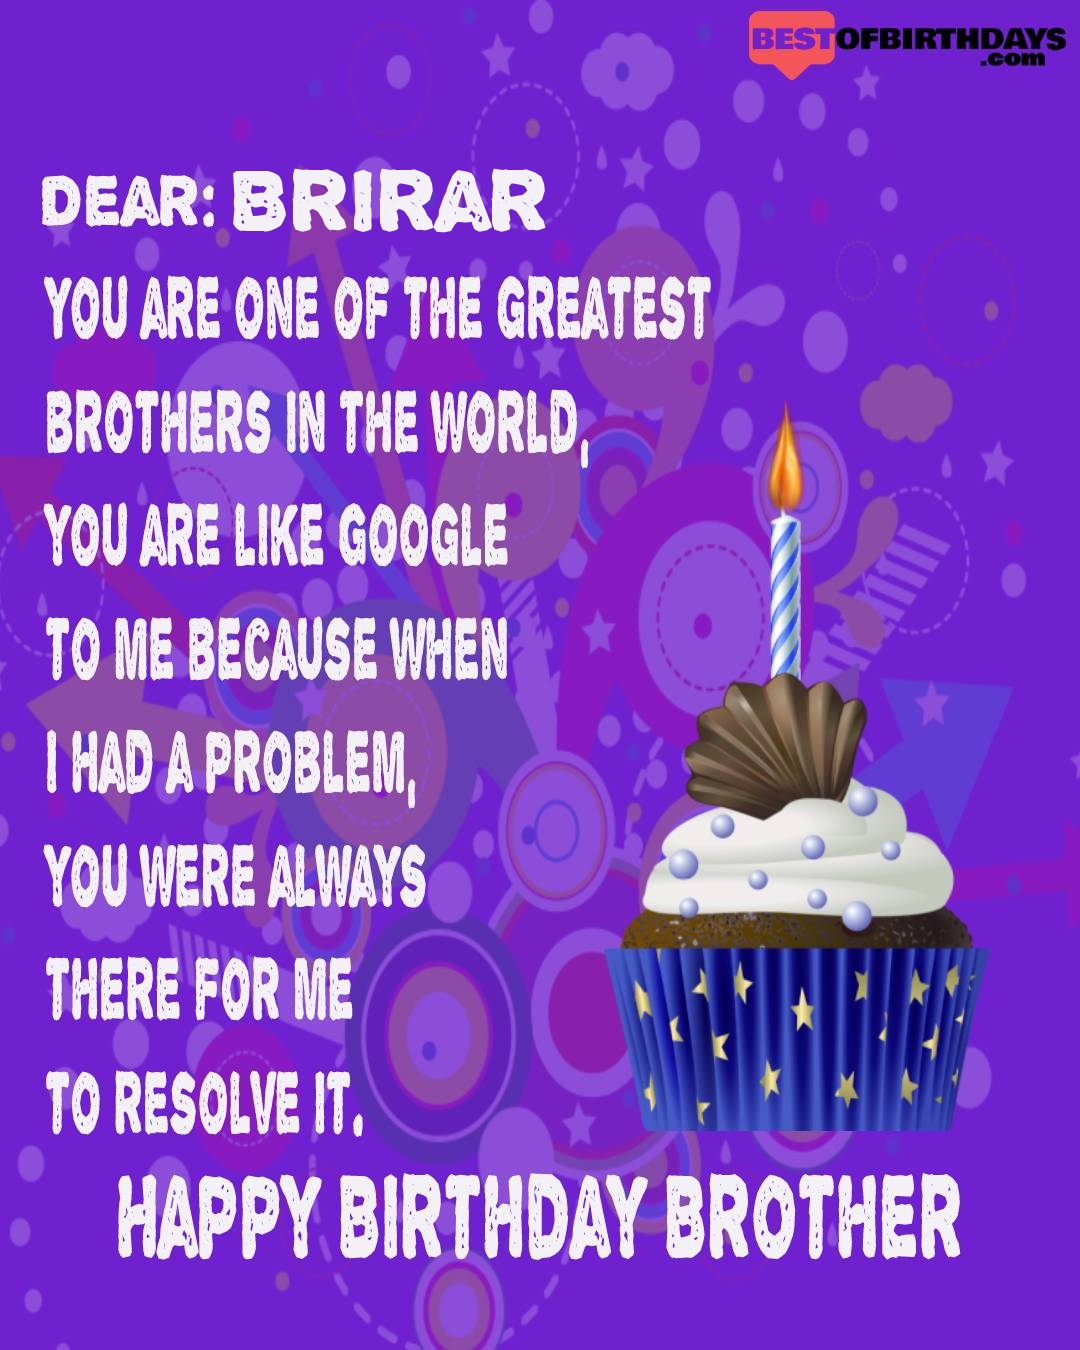 Happy birthday brirar bhai brother bro